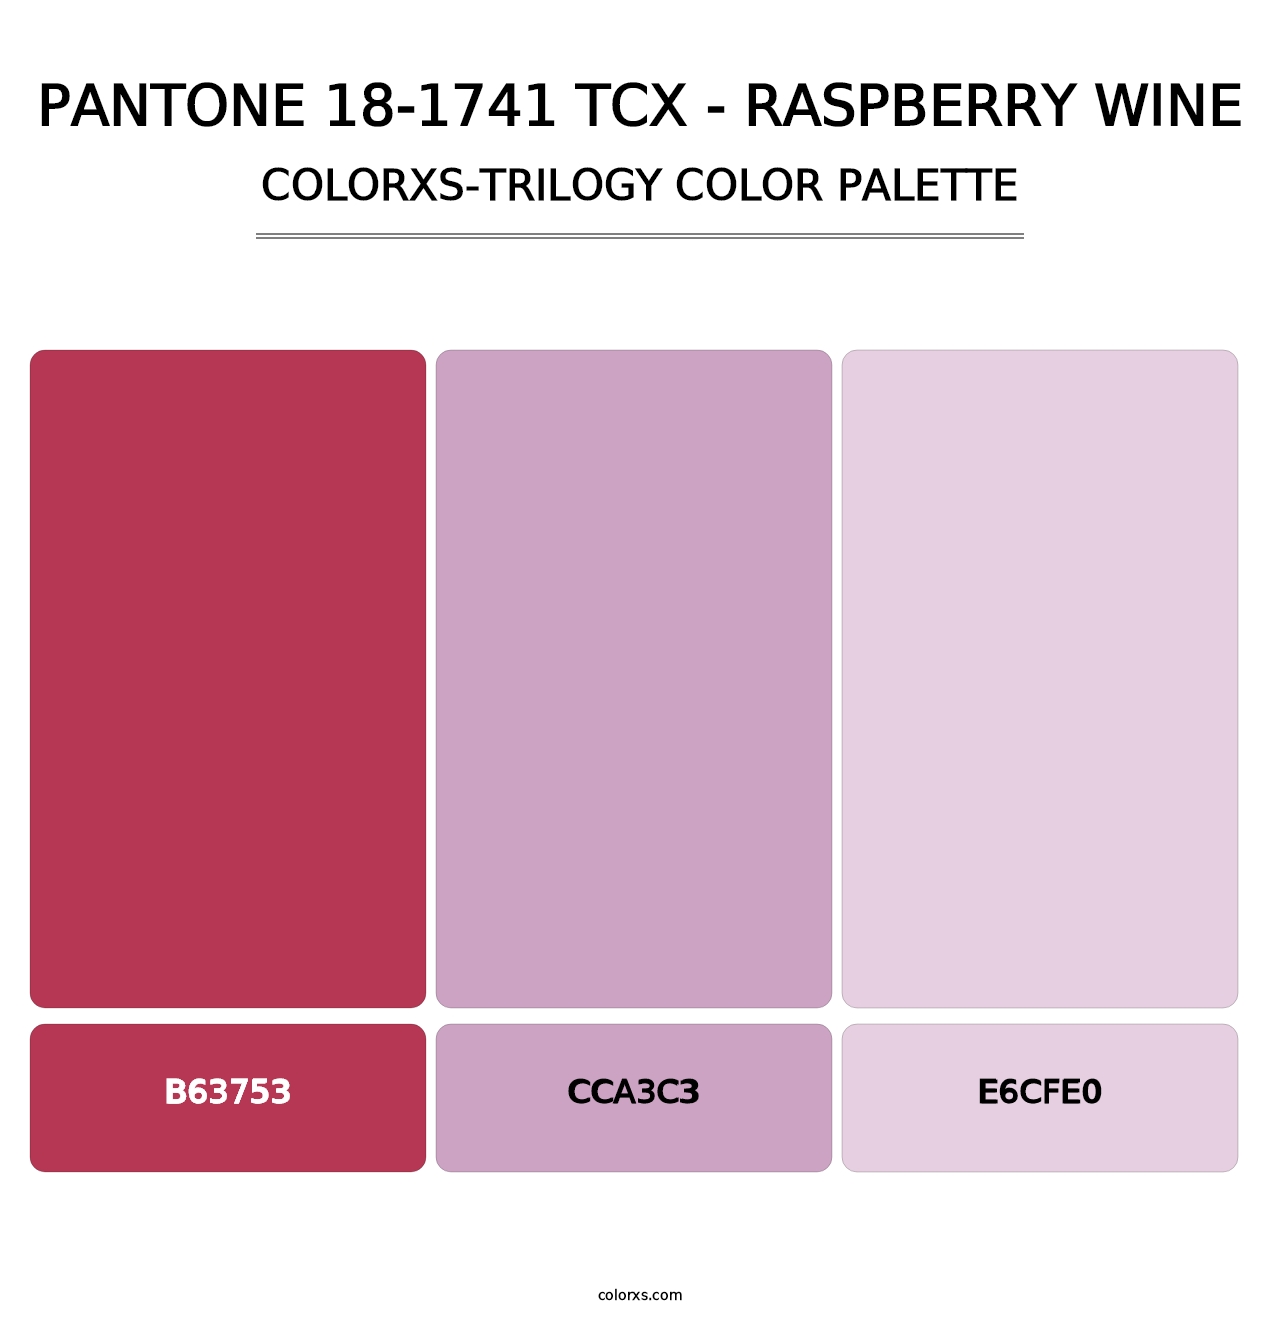 PANTONE 18-1741 TCX - Raspberry Wine - Colorxs Trilogy Palette